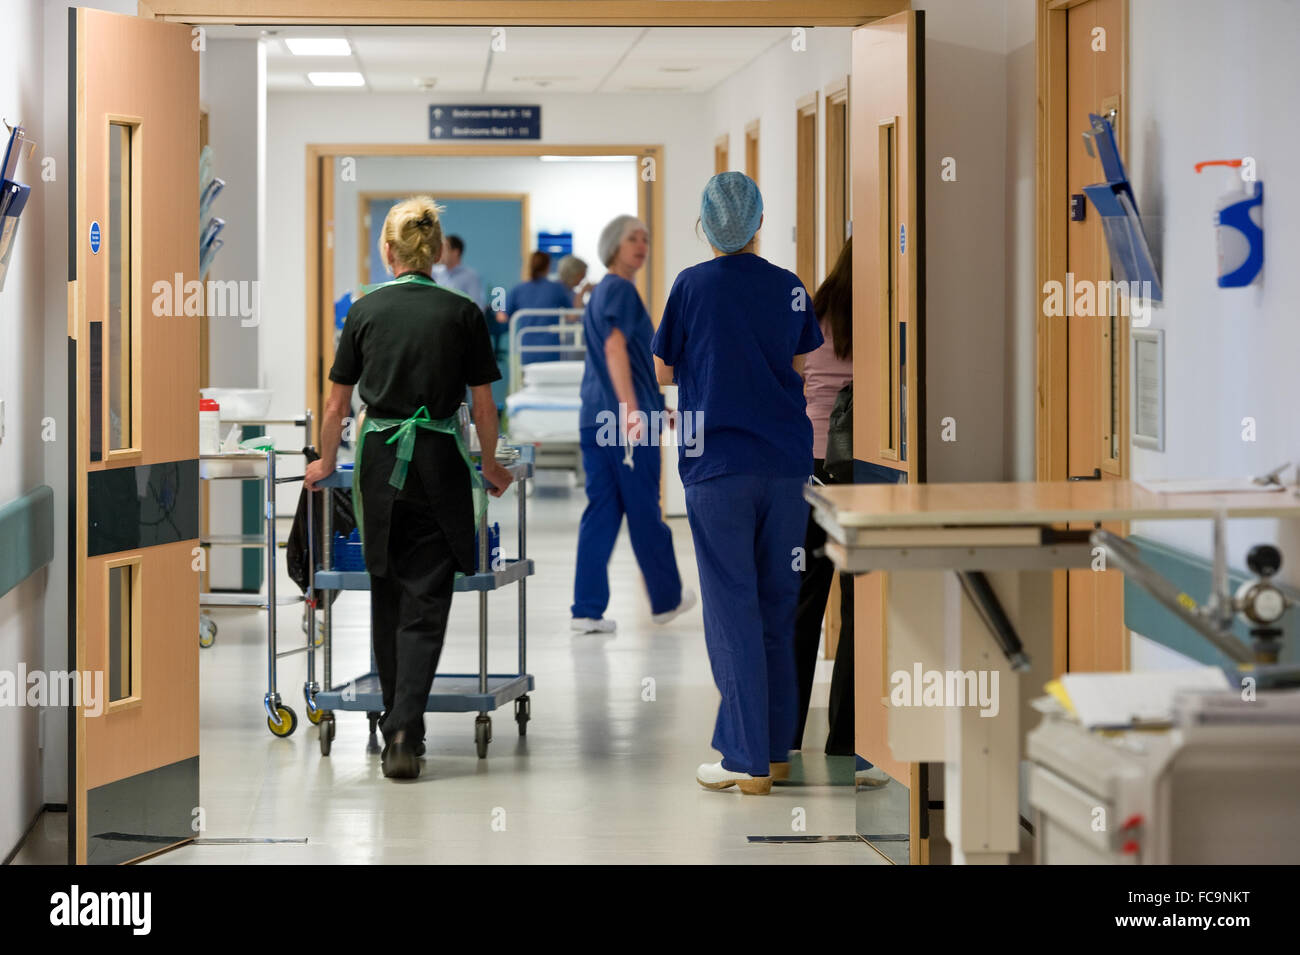 Couloir occupé à l'hôpital NHS en Angleterre Banque D'Images